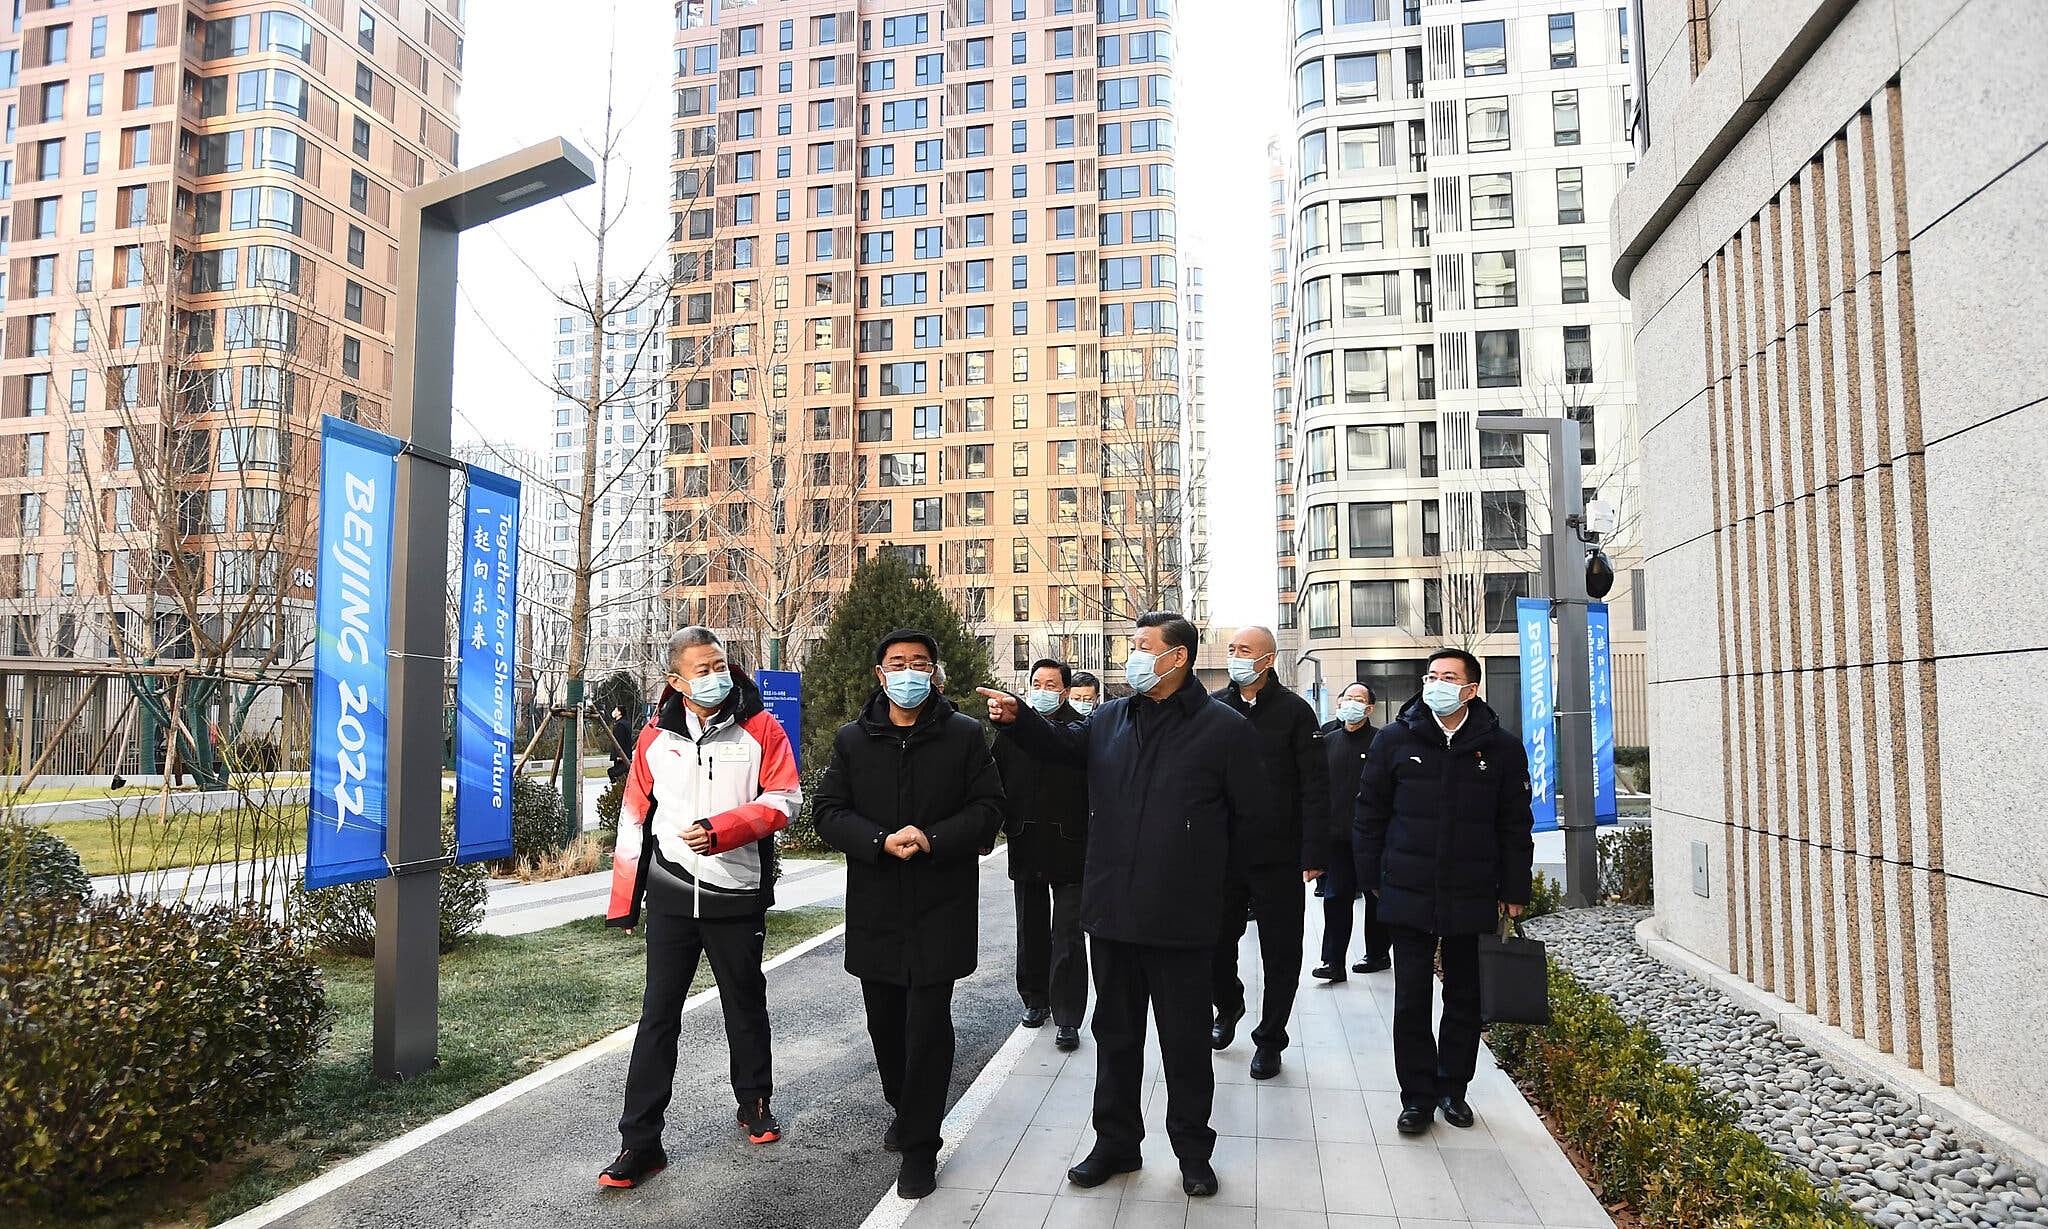 Chủ tịch Trung Quốc Tập Cận Bình thị sát làng vận động viên Olympic Bắc Kinh đầu tháng 1. Ảnh: Xinhua.